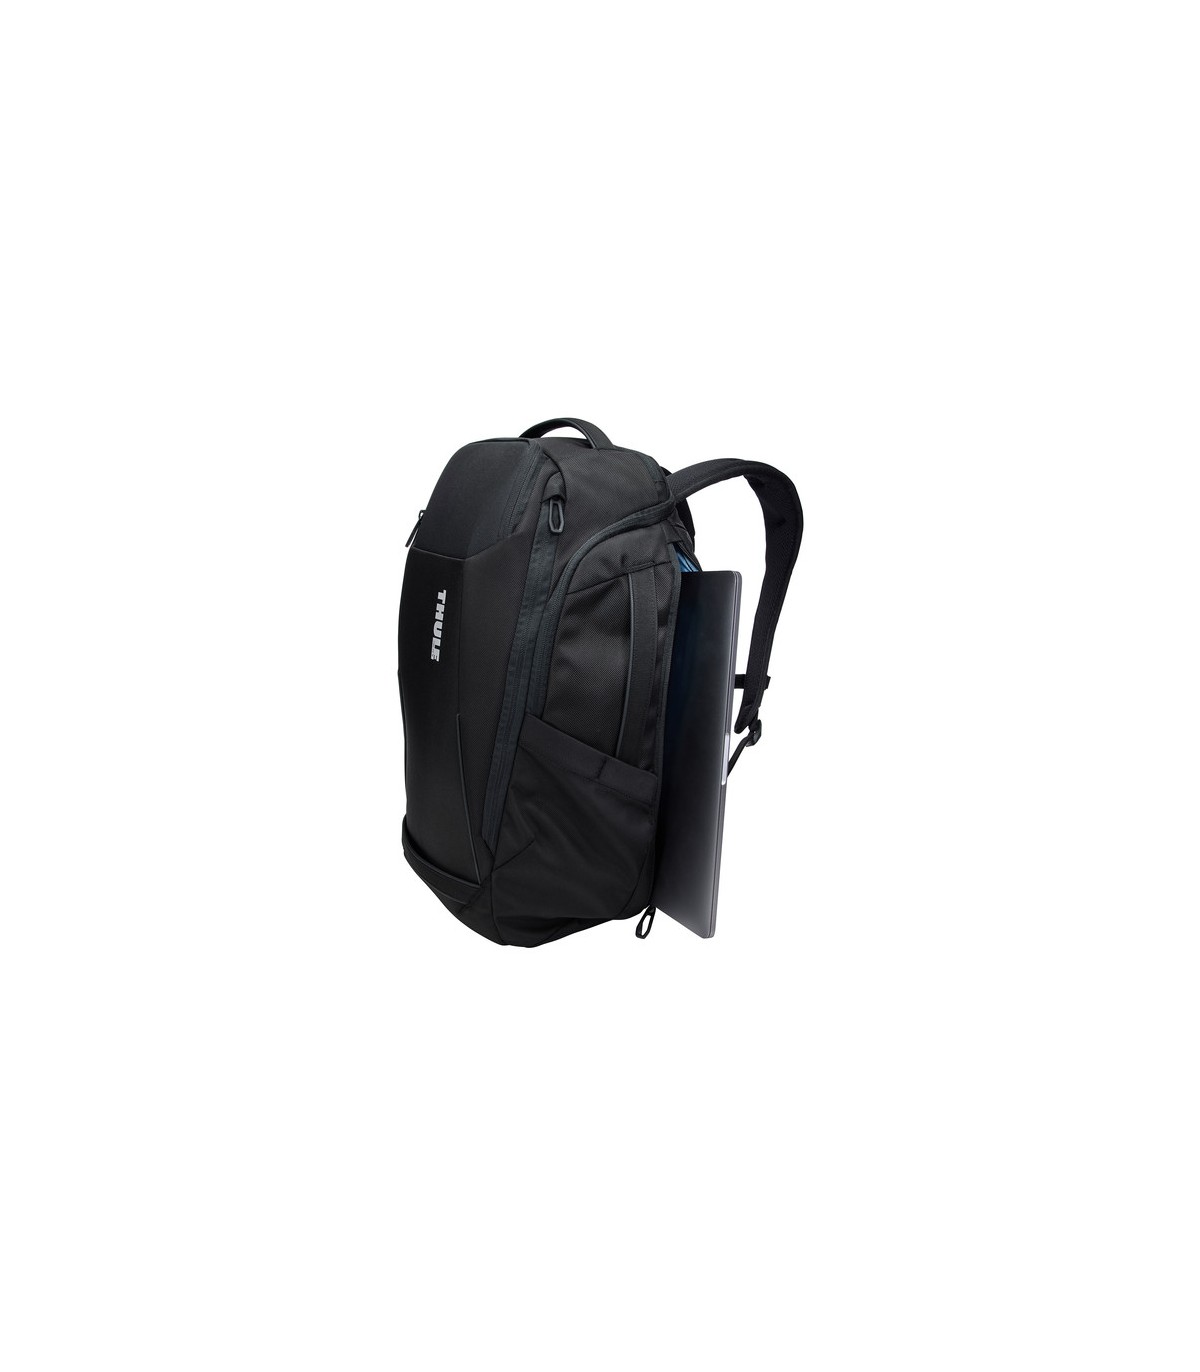 Thule EnRoute Backpack 30L verde ✔️ AutoEkipa